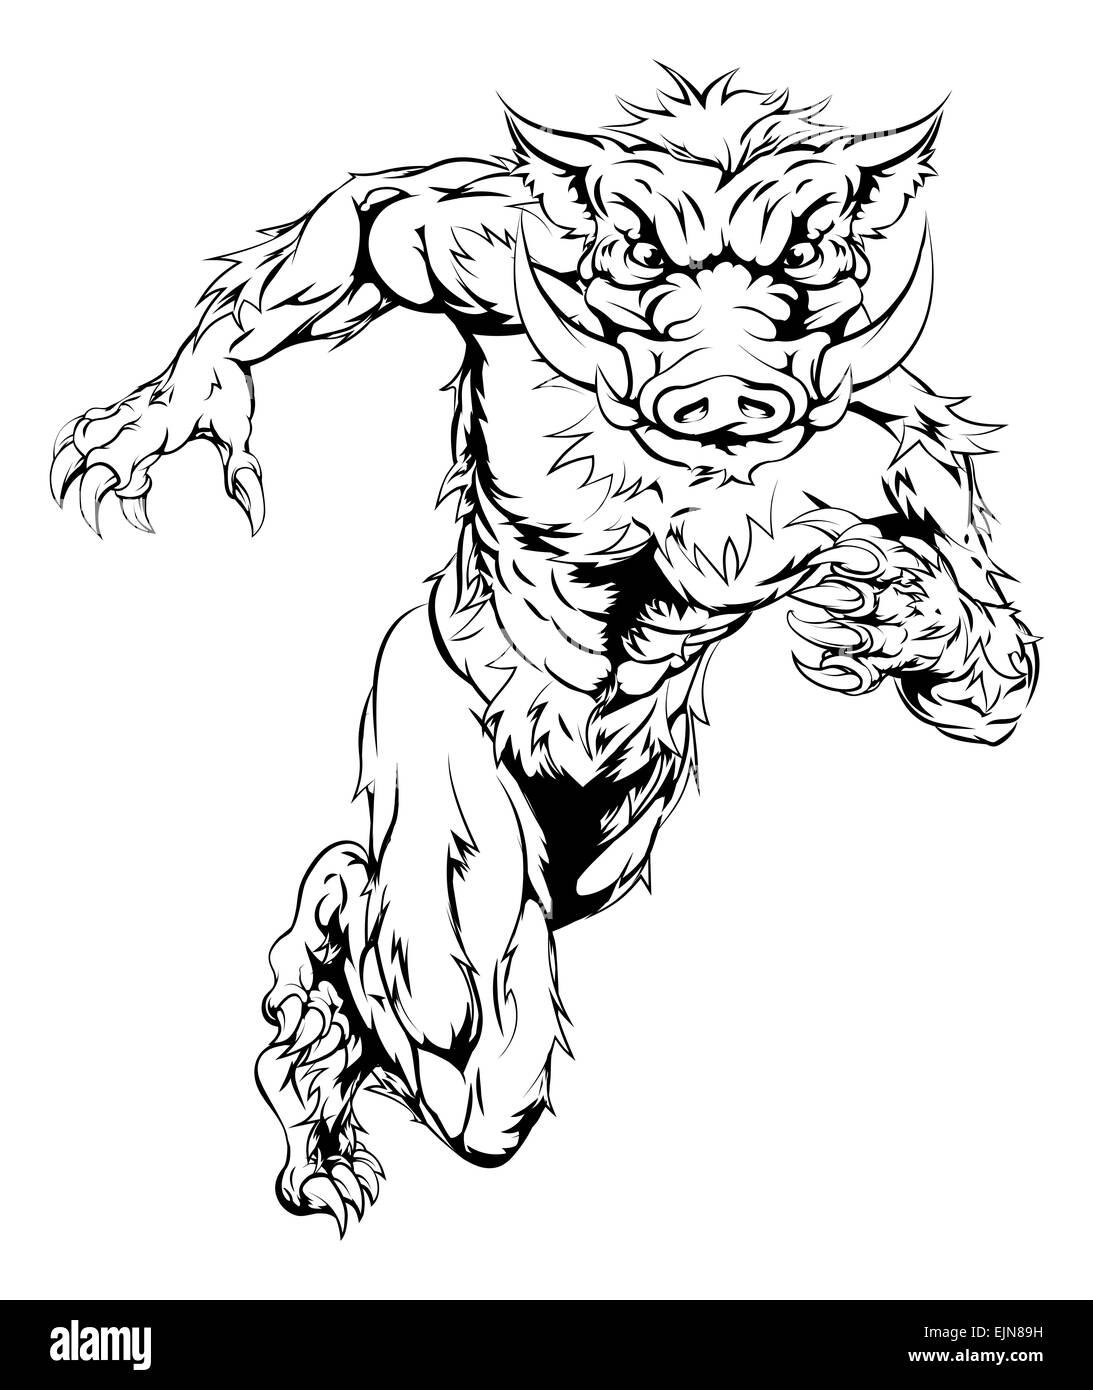 Eine Zeichnung von einem heftigen aussehende Eber Sport Charakter Maskottchen ausgeführt Stockfoto